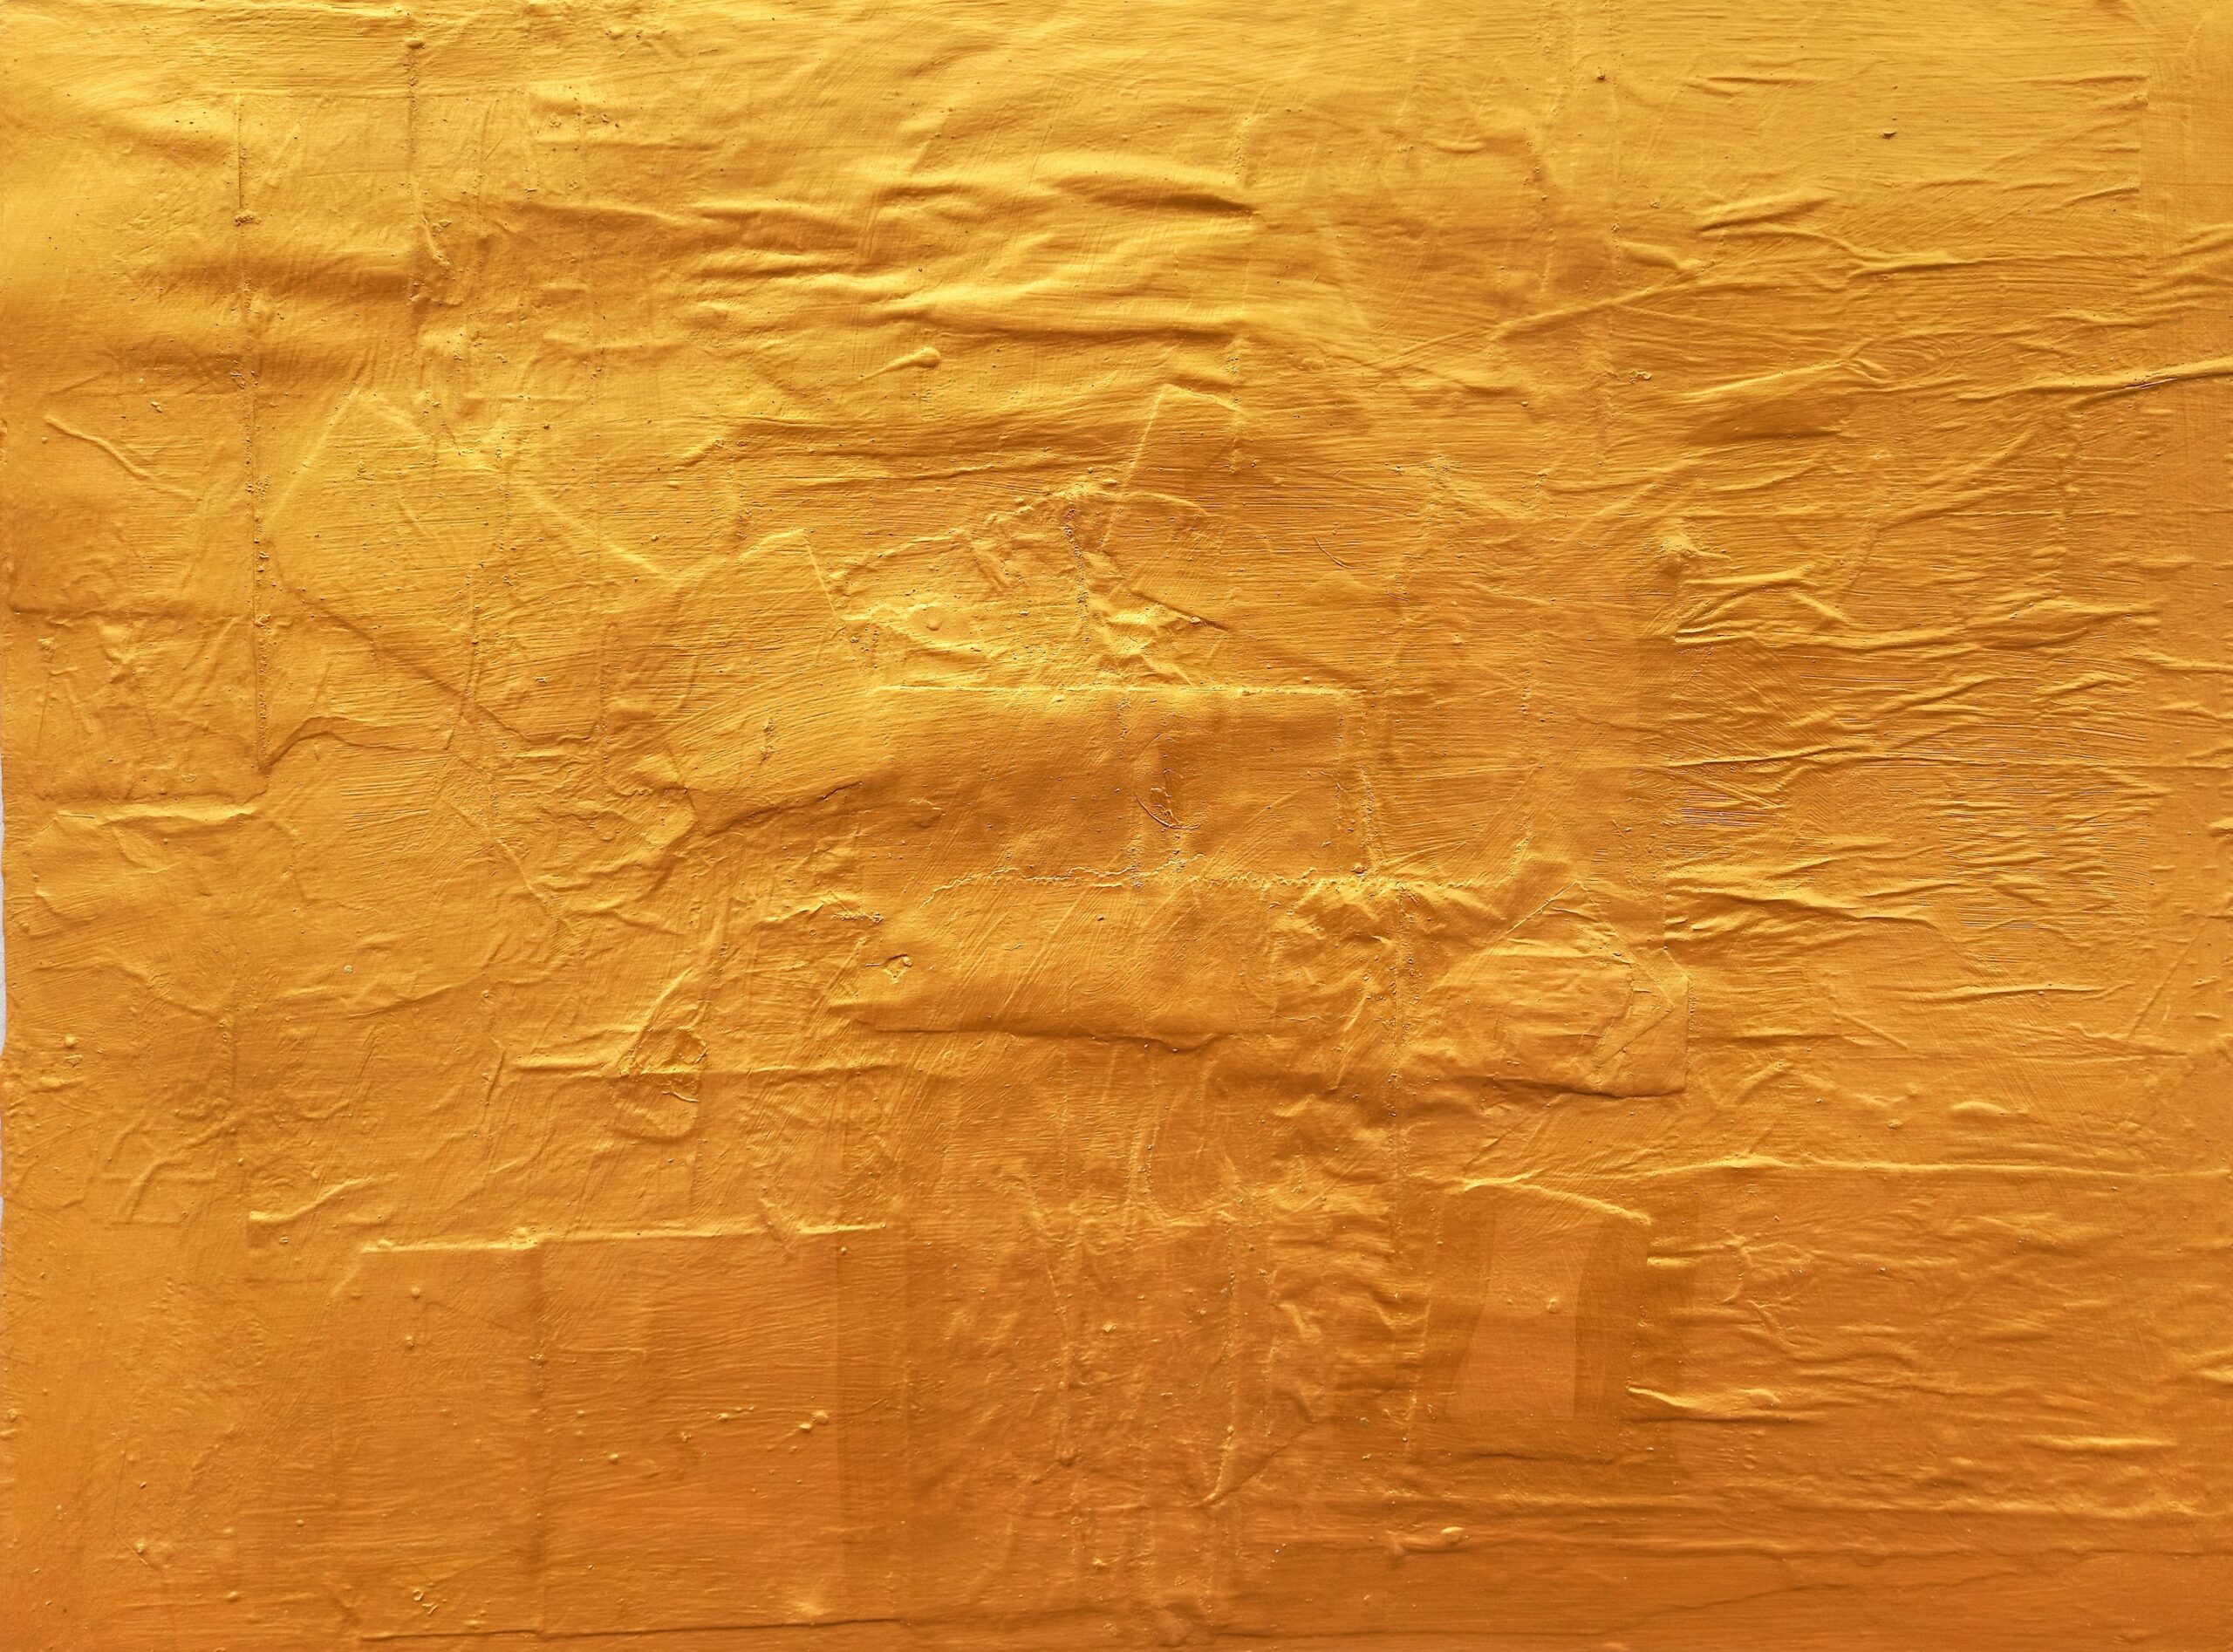 pax acrylic gold conceptual sicily artist claudio arezzo di trifiletti oro